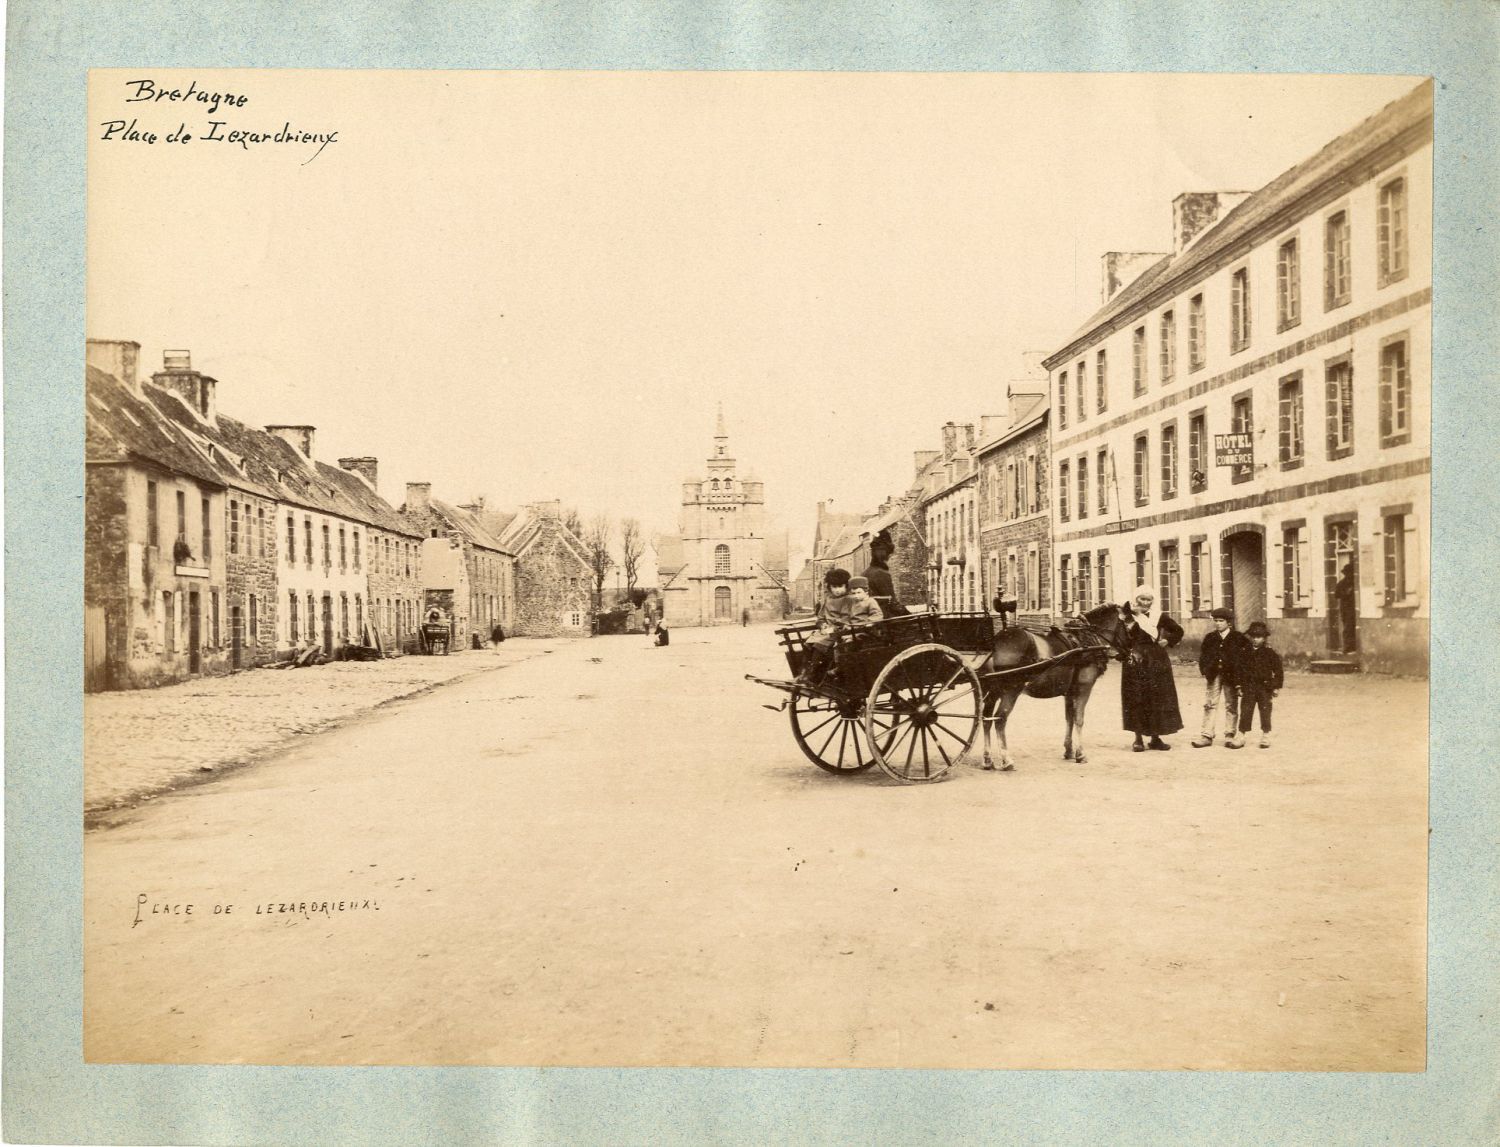 Côtes d'Armor, Place de Lézardrieux, approx. 1880 Vintage Albumen Print. Board